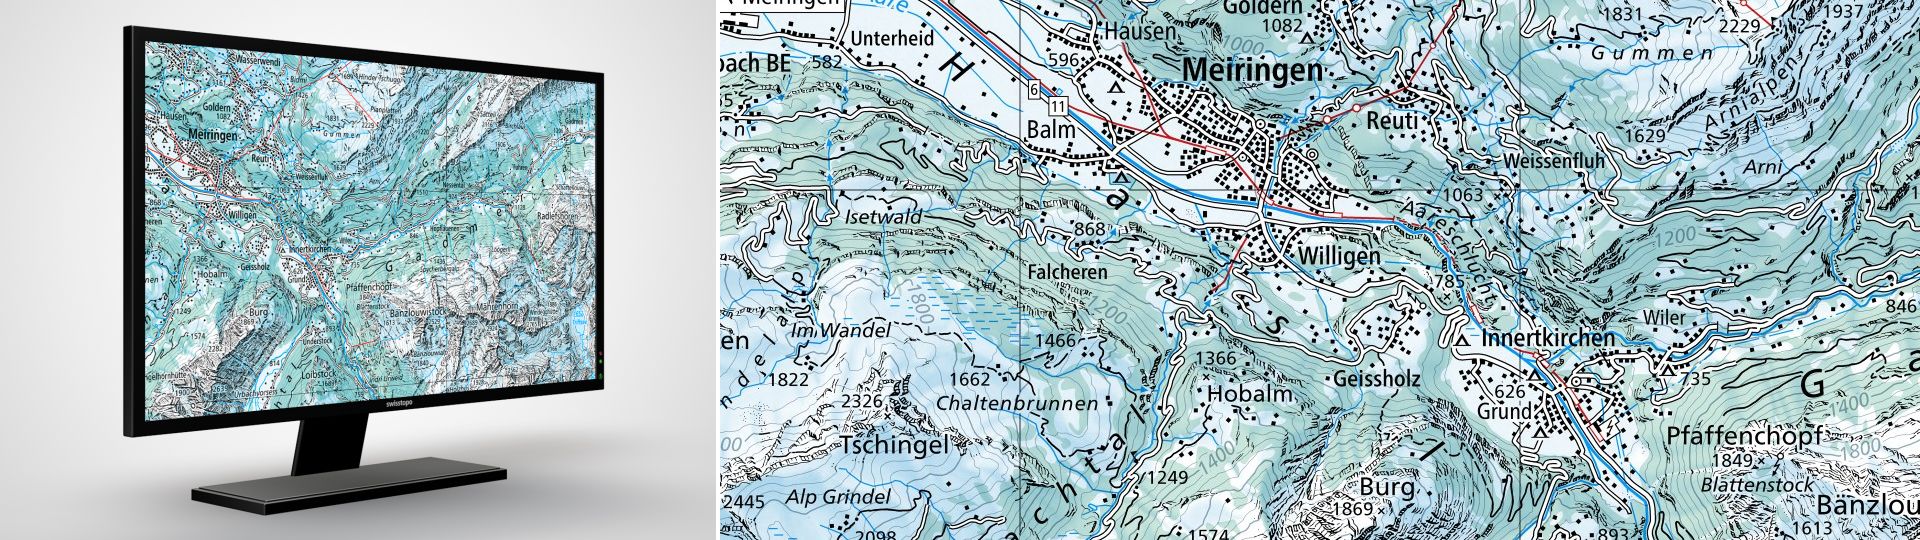 Swiss Map Raster Inverno 100: Swiss Map Raster Inverno 100 è la carta nazionale digitale 1:100 000 in rappresentazione invernale in formato raster.